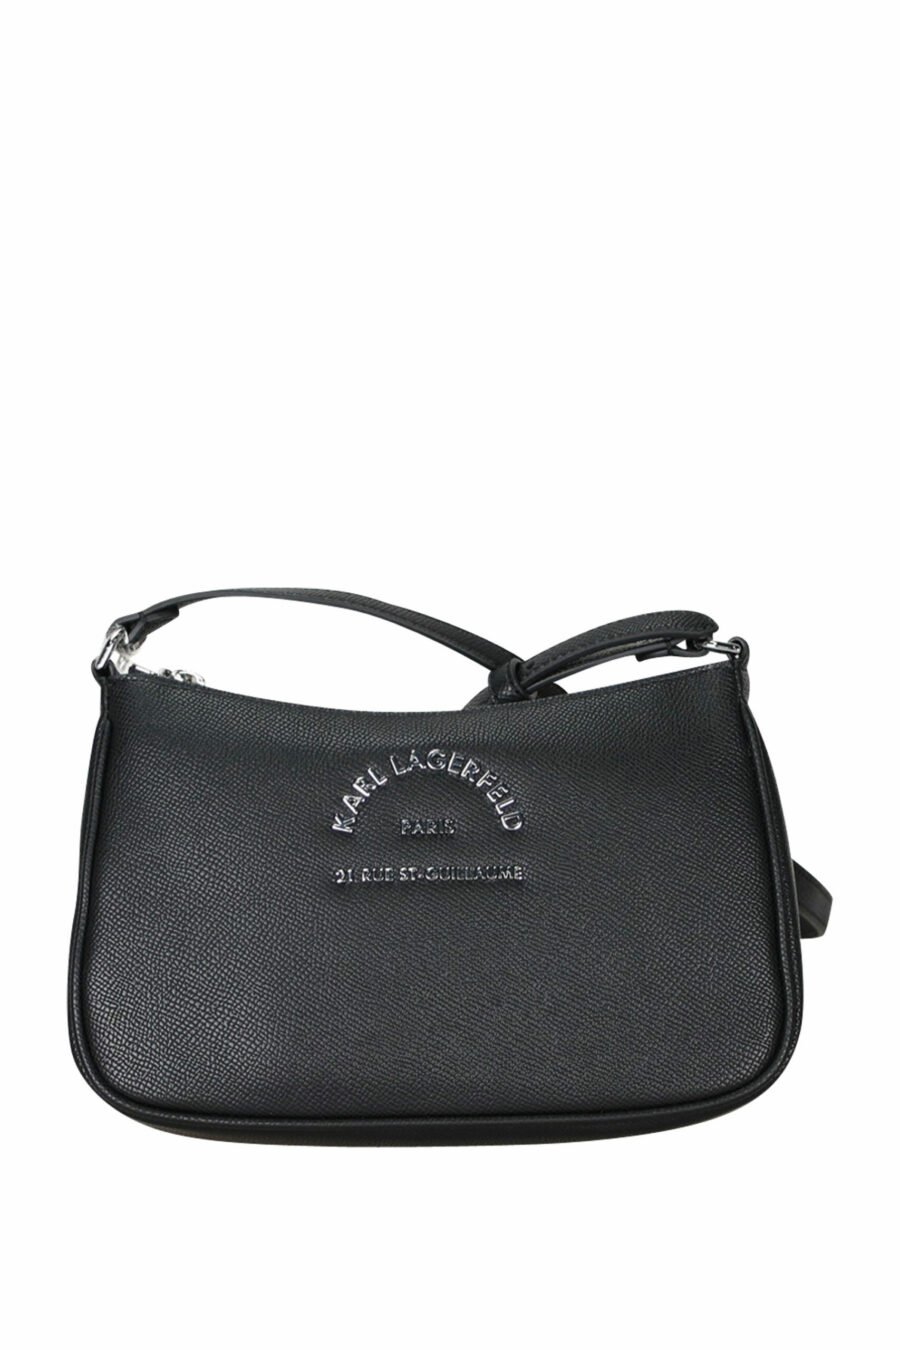 Black shoulder bag with mini-logo "rue st guillaume" - 8720744417132 scaled